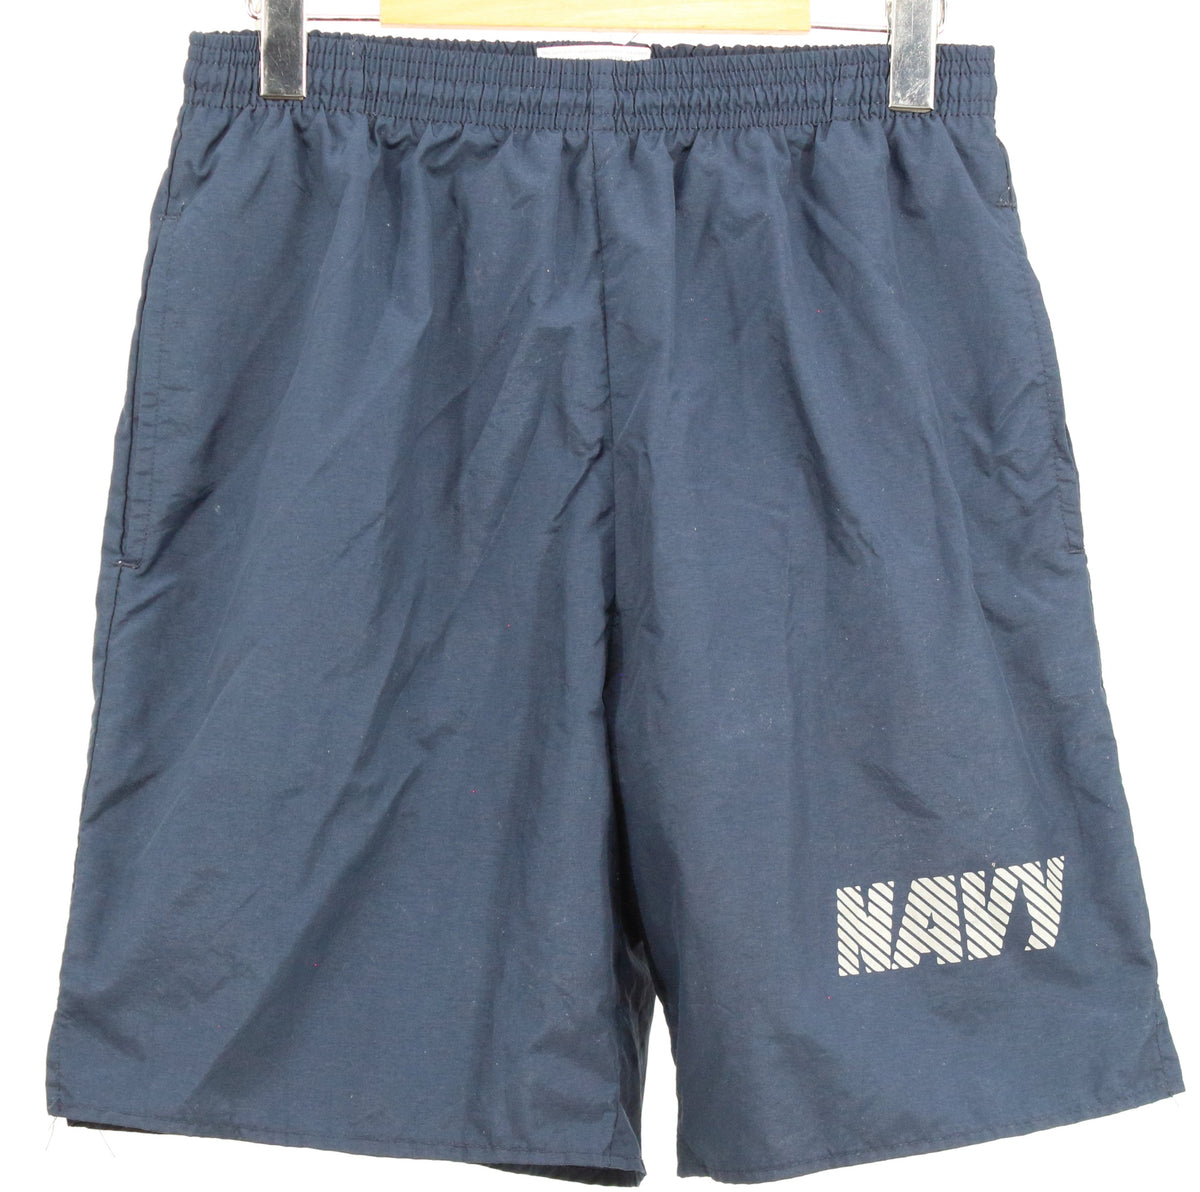 U.S.Navy Navy Originals Nylon Shorts